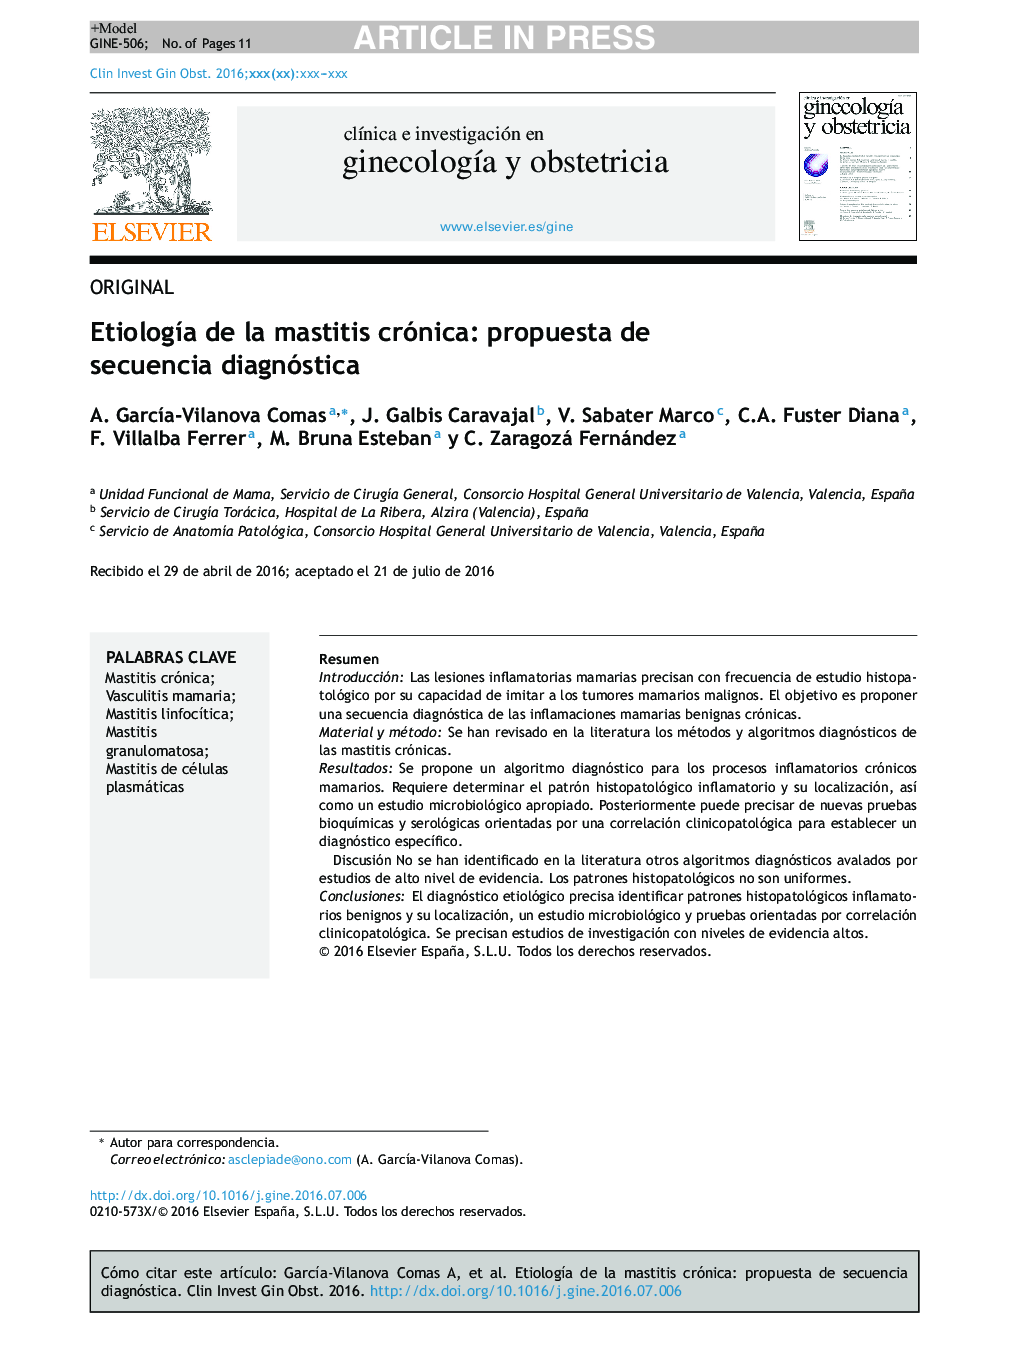 EtiologÃ­a de la mastitis crónica: propuesta de secuencia diagnóstica